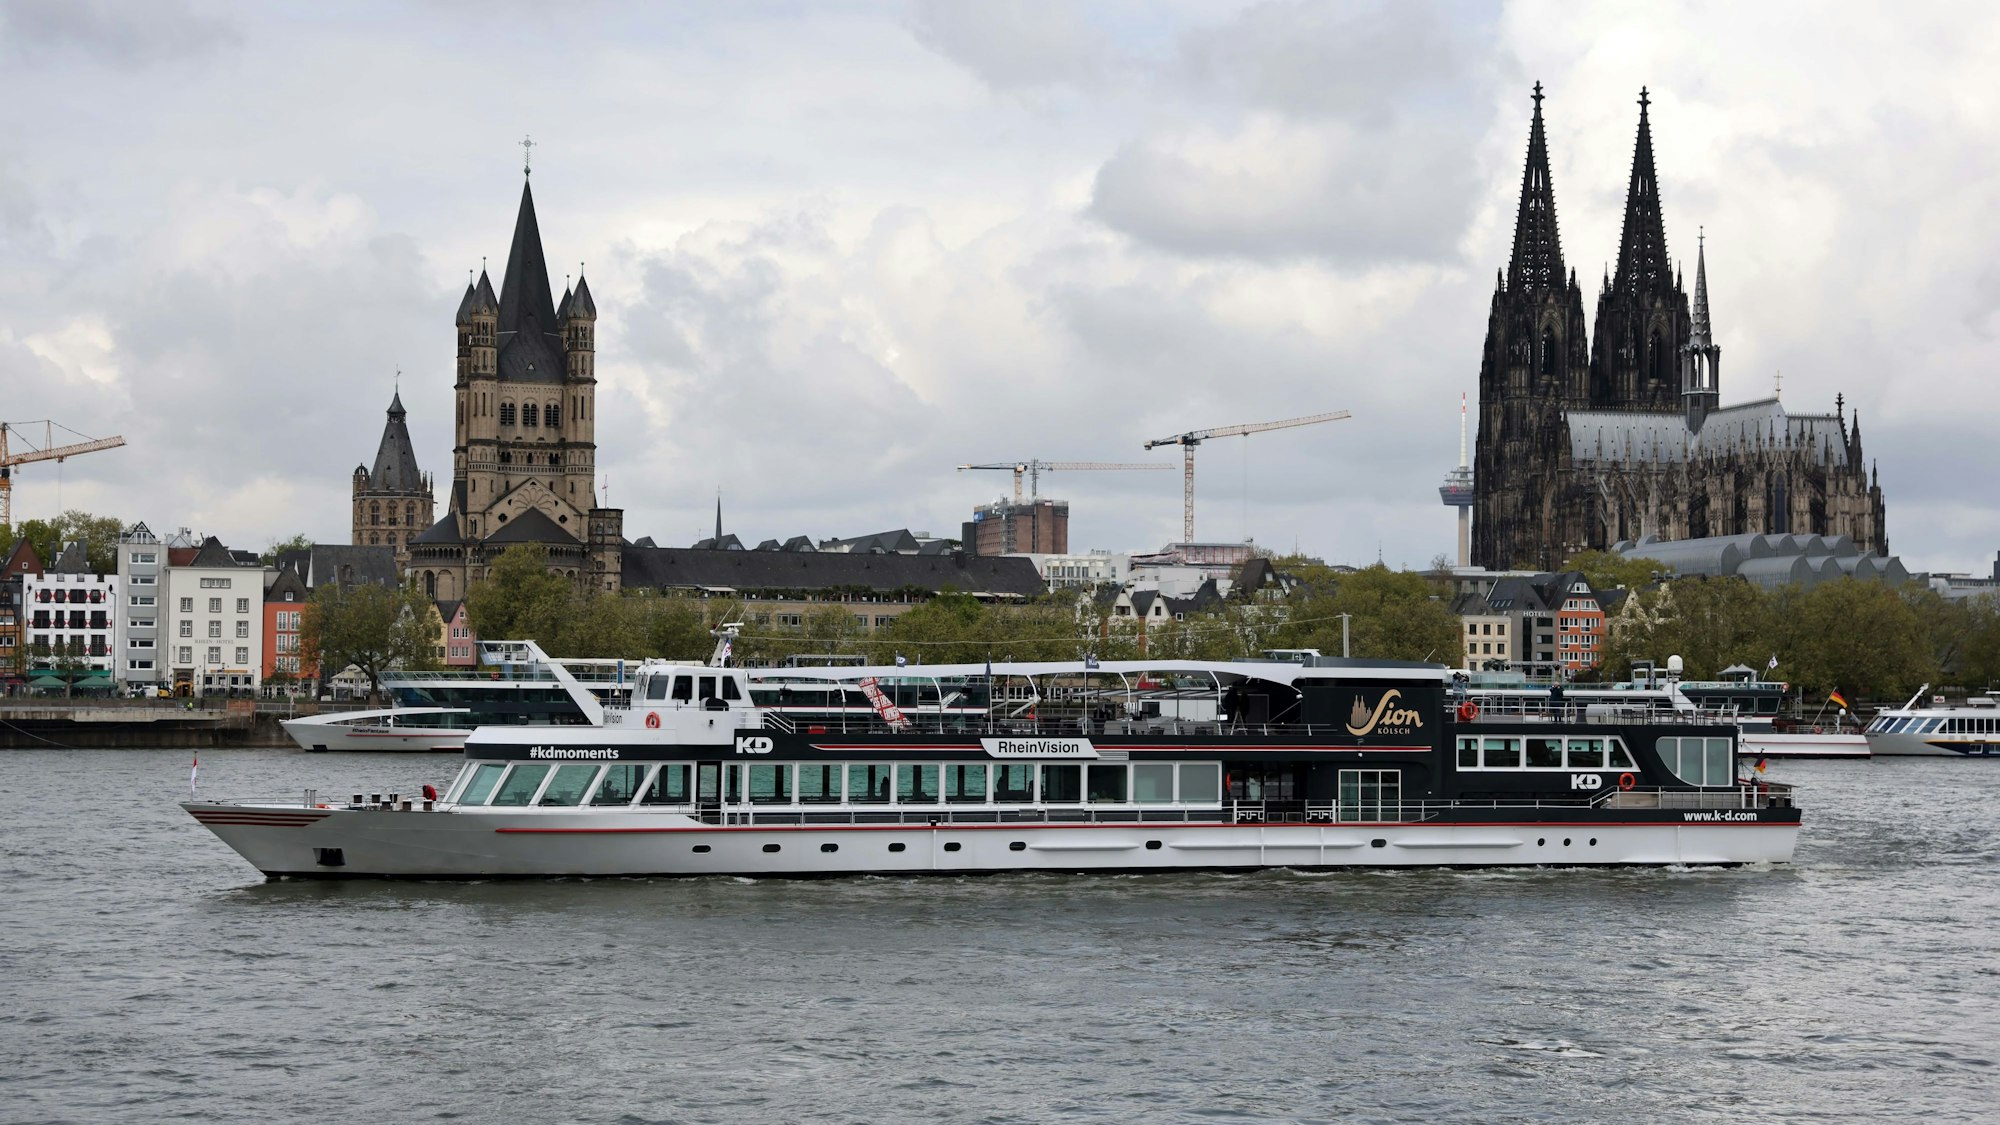 Komplett saniert: Aus der MS Loreley ist die MS Rhein-Vision geworden, die Überholung des Schiffs hat rund 1,3 Millionen Euro gekostet. Zu sehen ist das Schiff vor dem Kölner Altstadt-Panorama.